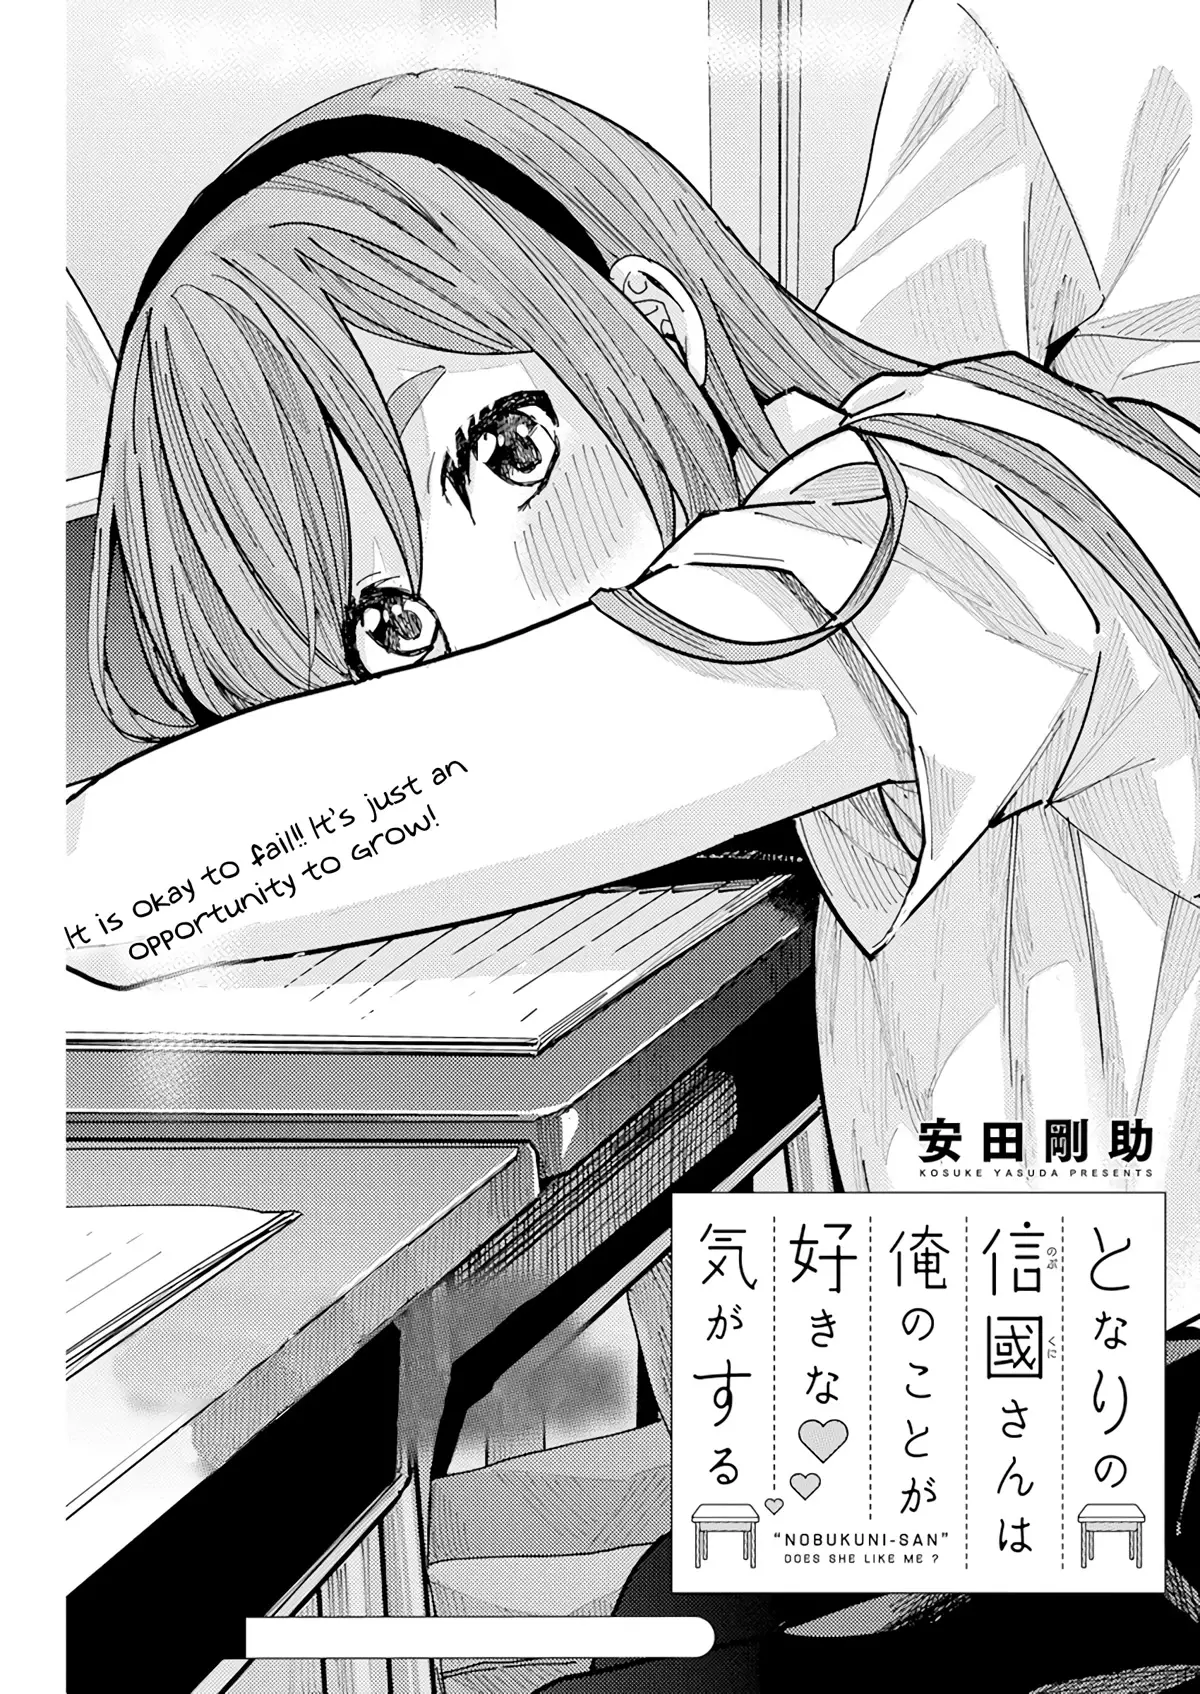 "nobukuni-San" Does She Like Me? - 20 page 2-58f76de2